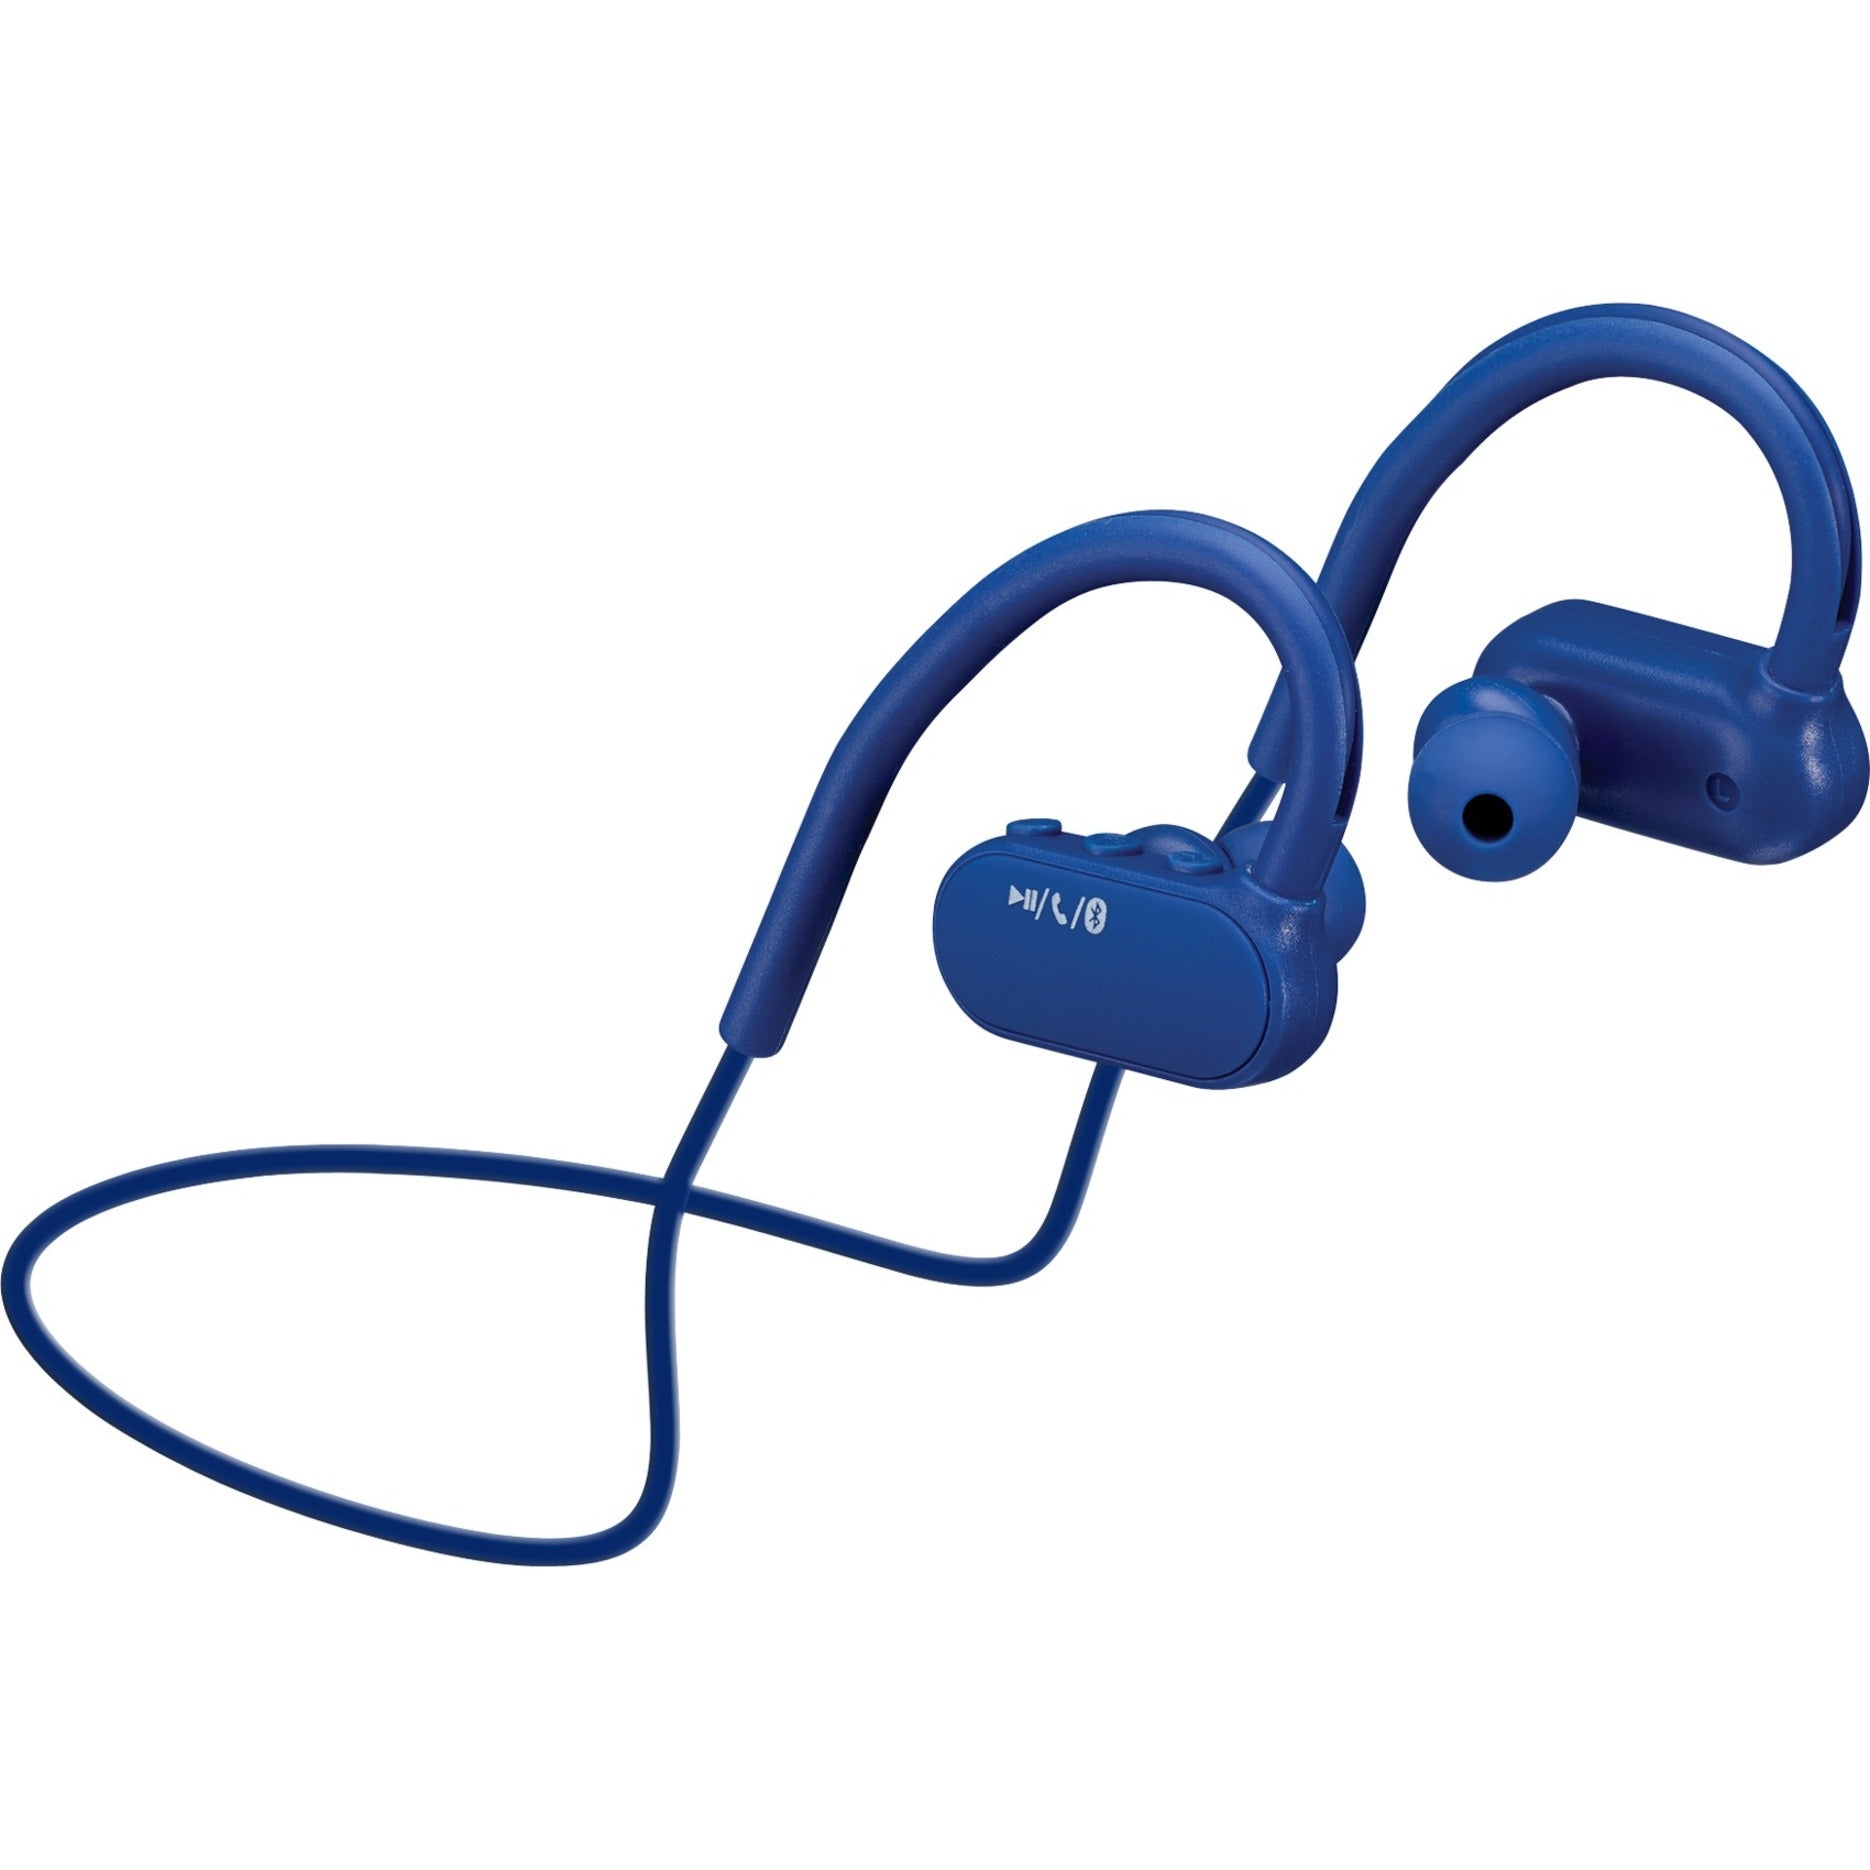 iLive IAEB29BU Earset, Wireless Bluetooth Stereo Earbuds, Blue